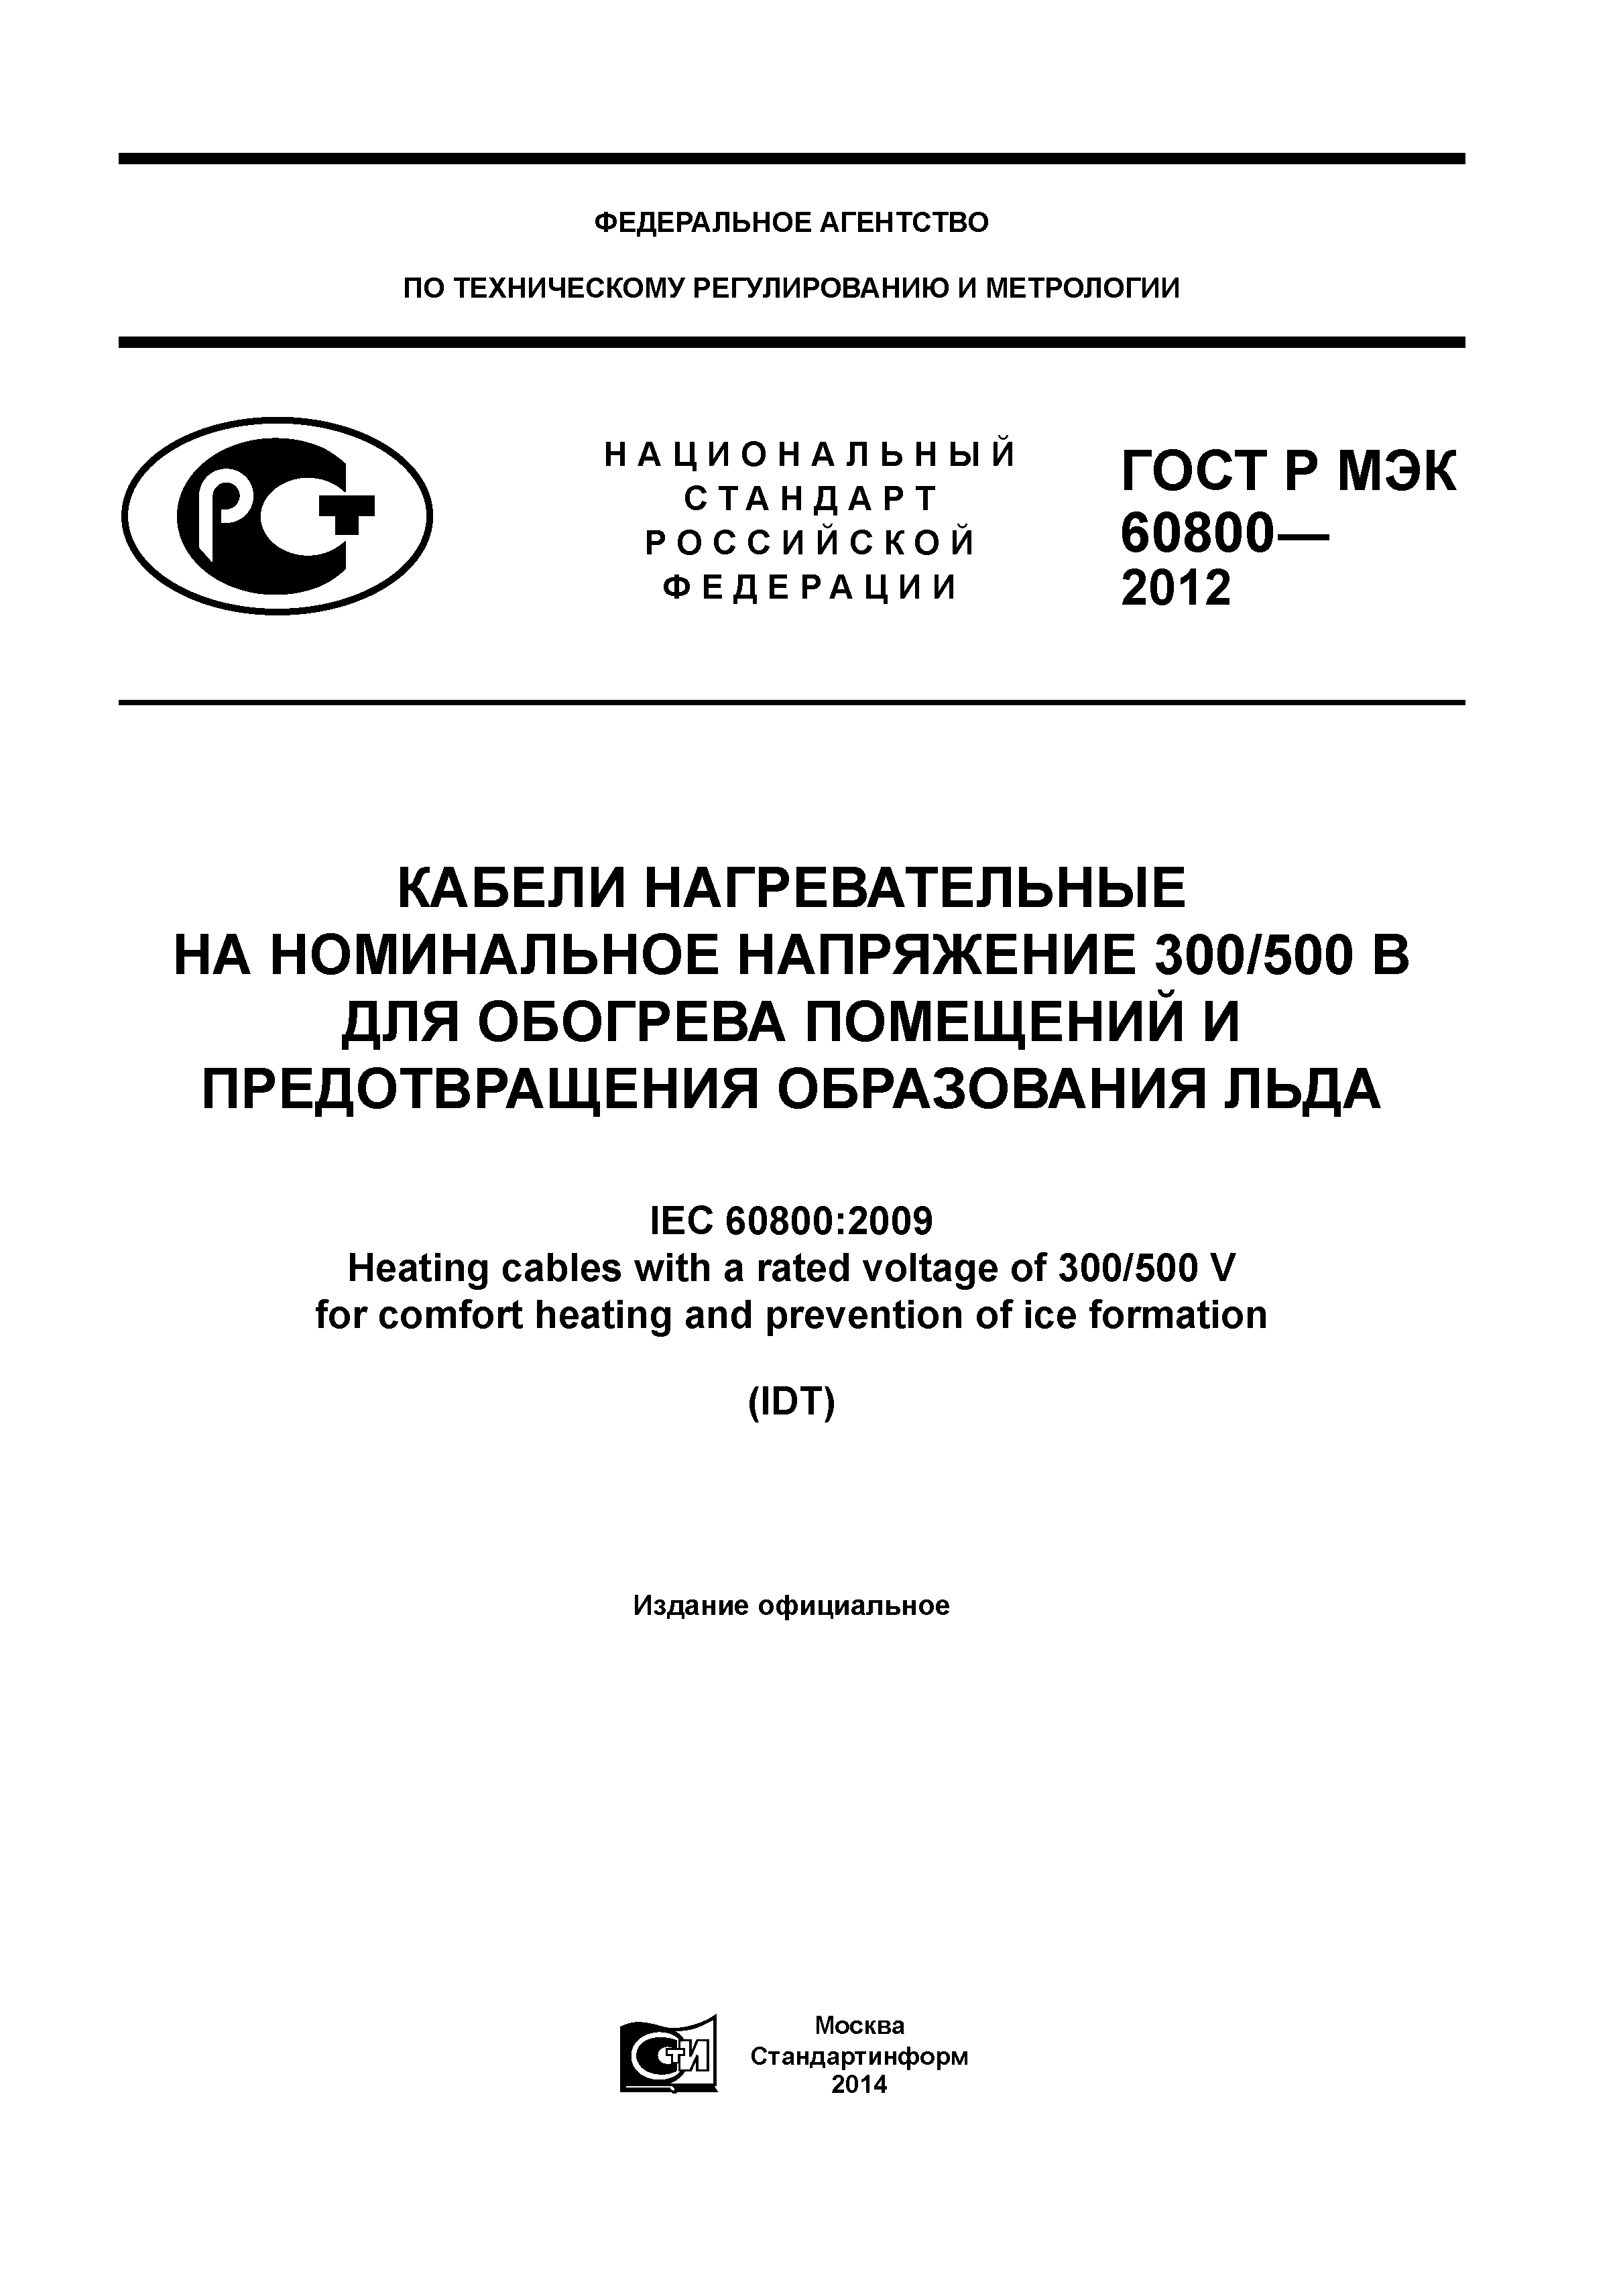 ГОСТ Р МЭК 60800-2012